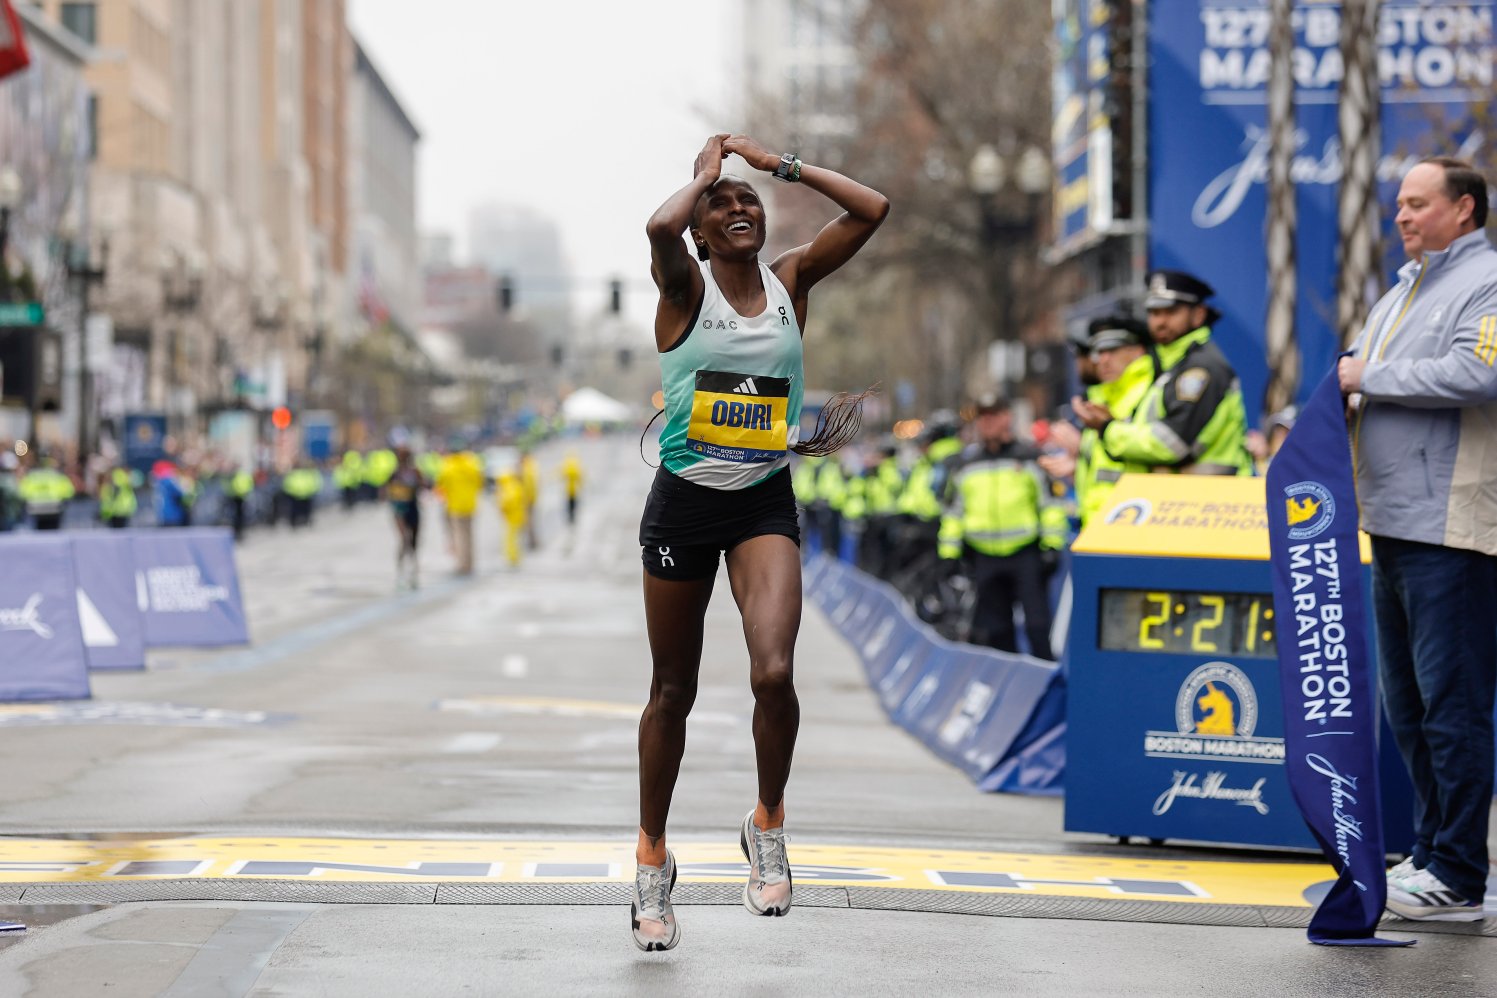 PHOTOS Inspiring Images From the 127th Boston Marathon NBC Boston